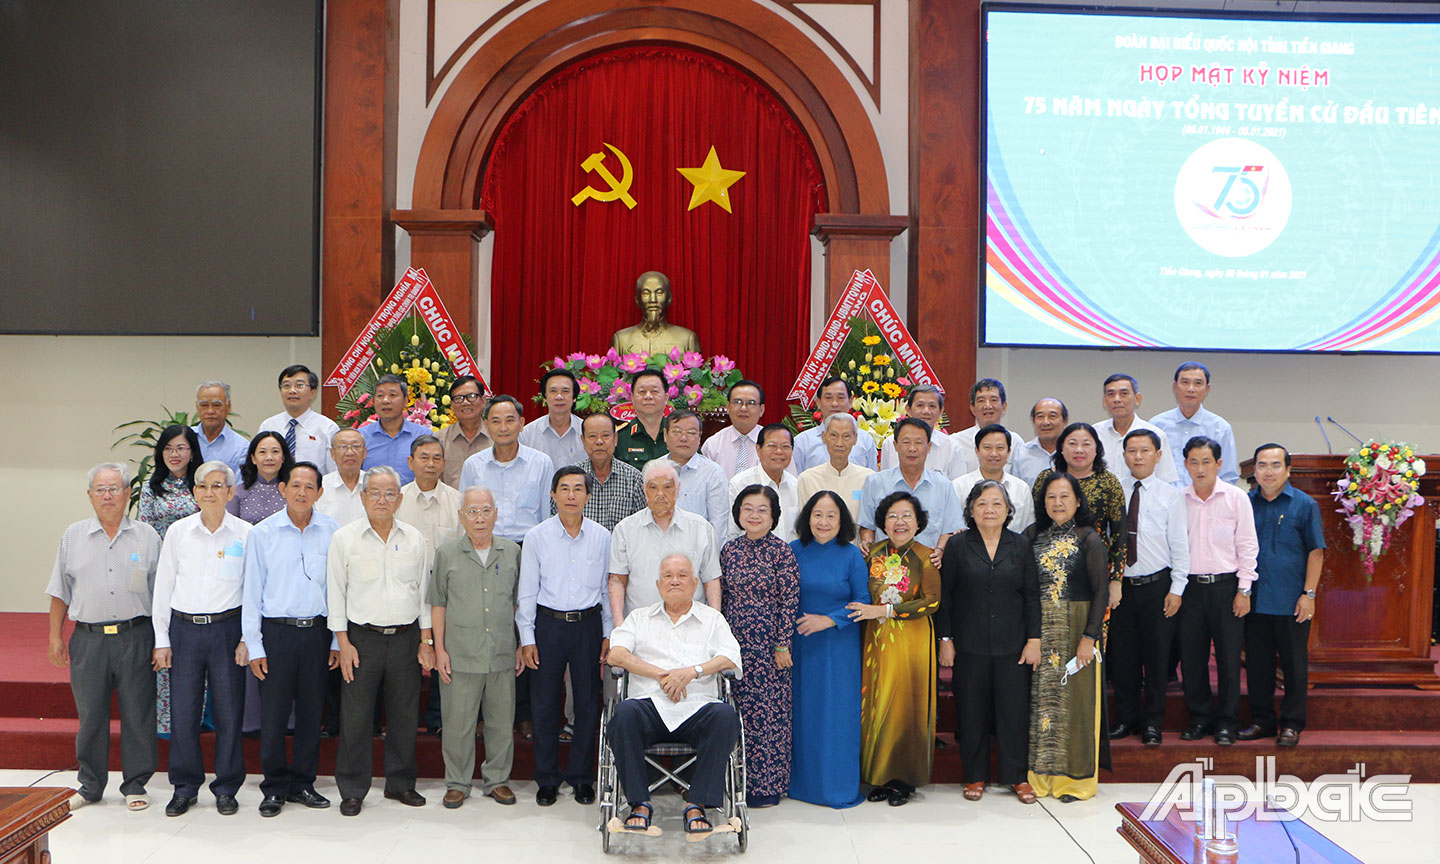 Các ĐBQH đơn vị tỉnh Tiền Giang chụp ảnh lưu niệm cùng lãnh đạo tỉnh tại buổi Họp mặt kỷ niệm 75 năm Ngày Tổng tuyển cử đầu tiên (6-1-1946 - 6-1-2021).                            Ảnh: THU HOÀI